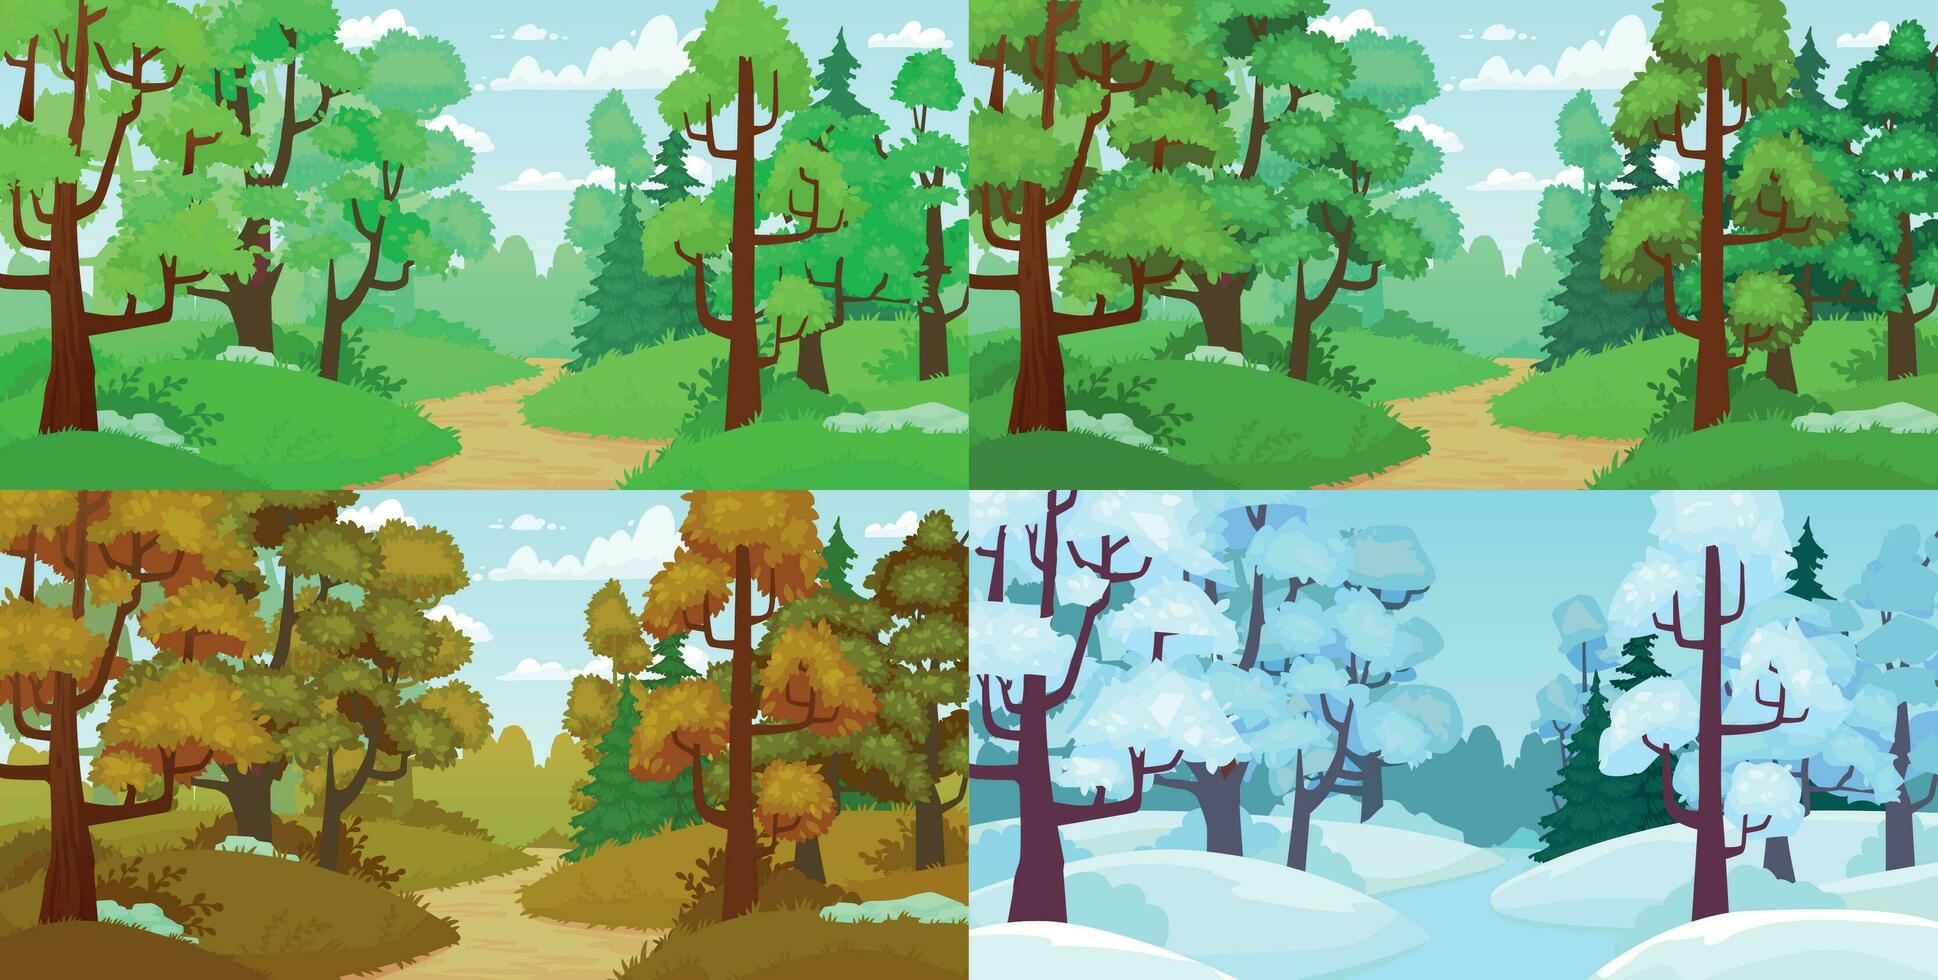 Wald Weg. Frühling und Sommer- Bäume, Herbst Blätter und Winter Wald Bäume. vier Jahreszeiten Landschaft Karikatur Vektor Illustration